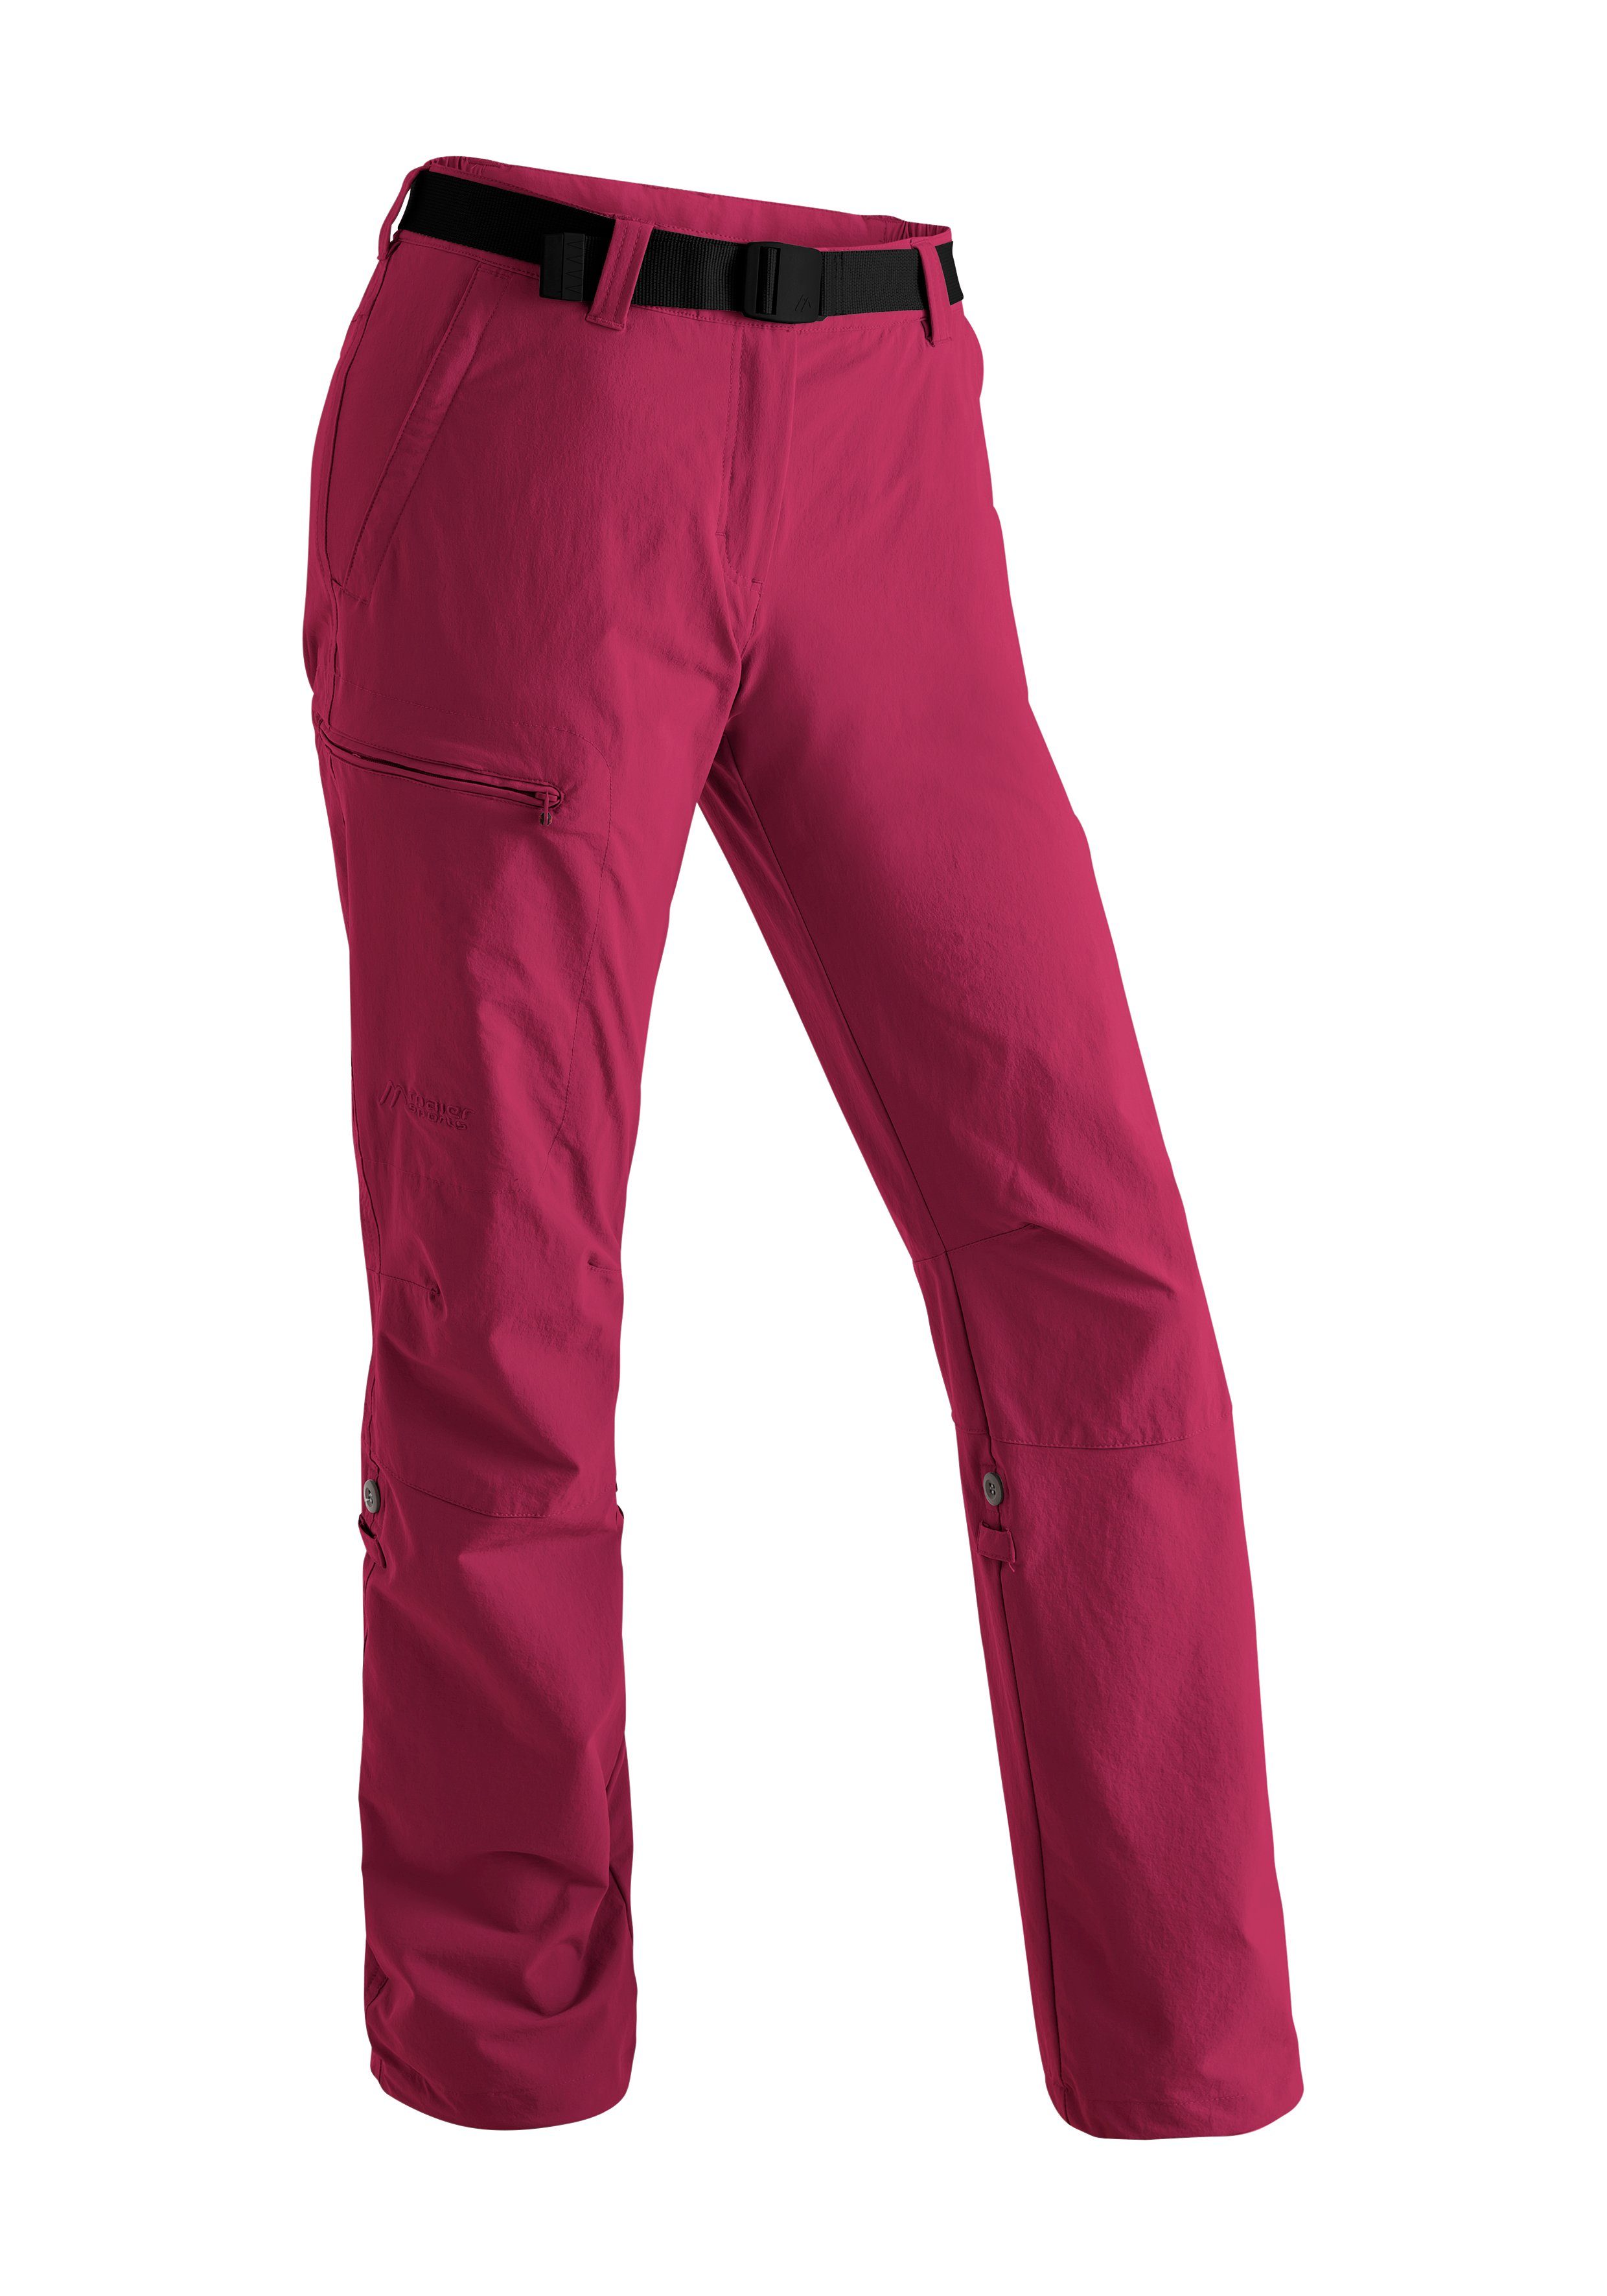 purpurrot Roll up Sports mit Maier Funktion Wanderhose, atmungsaktive Lulaka Damen Outdoor-Hose Funktionshose